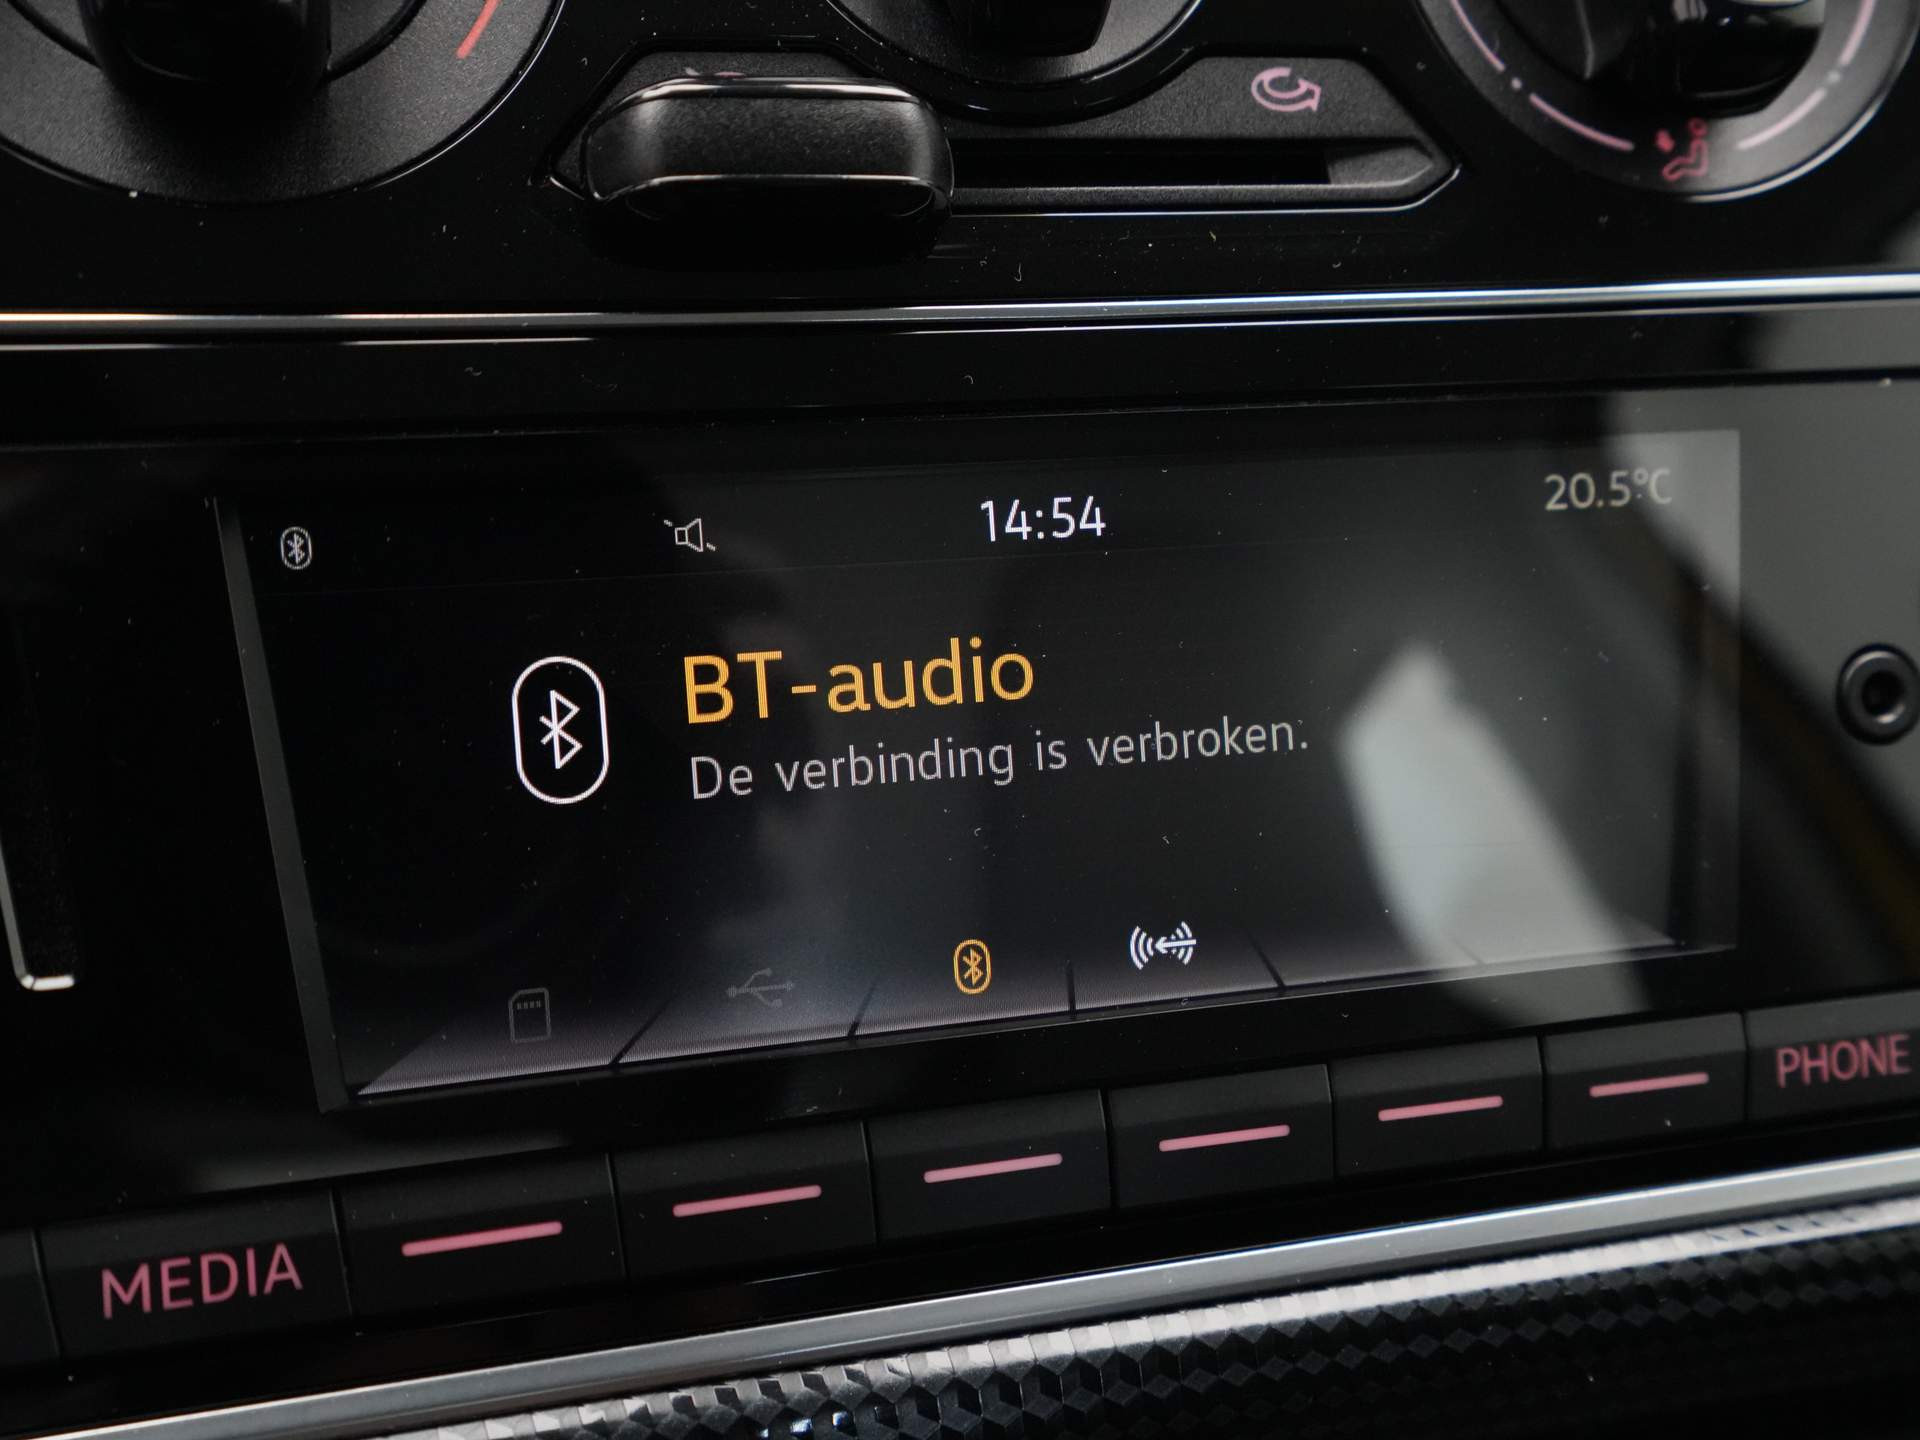 Volkswagen - up! 1.0 BMT 60pk move up! - 2019